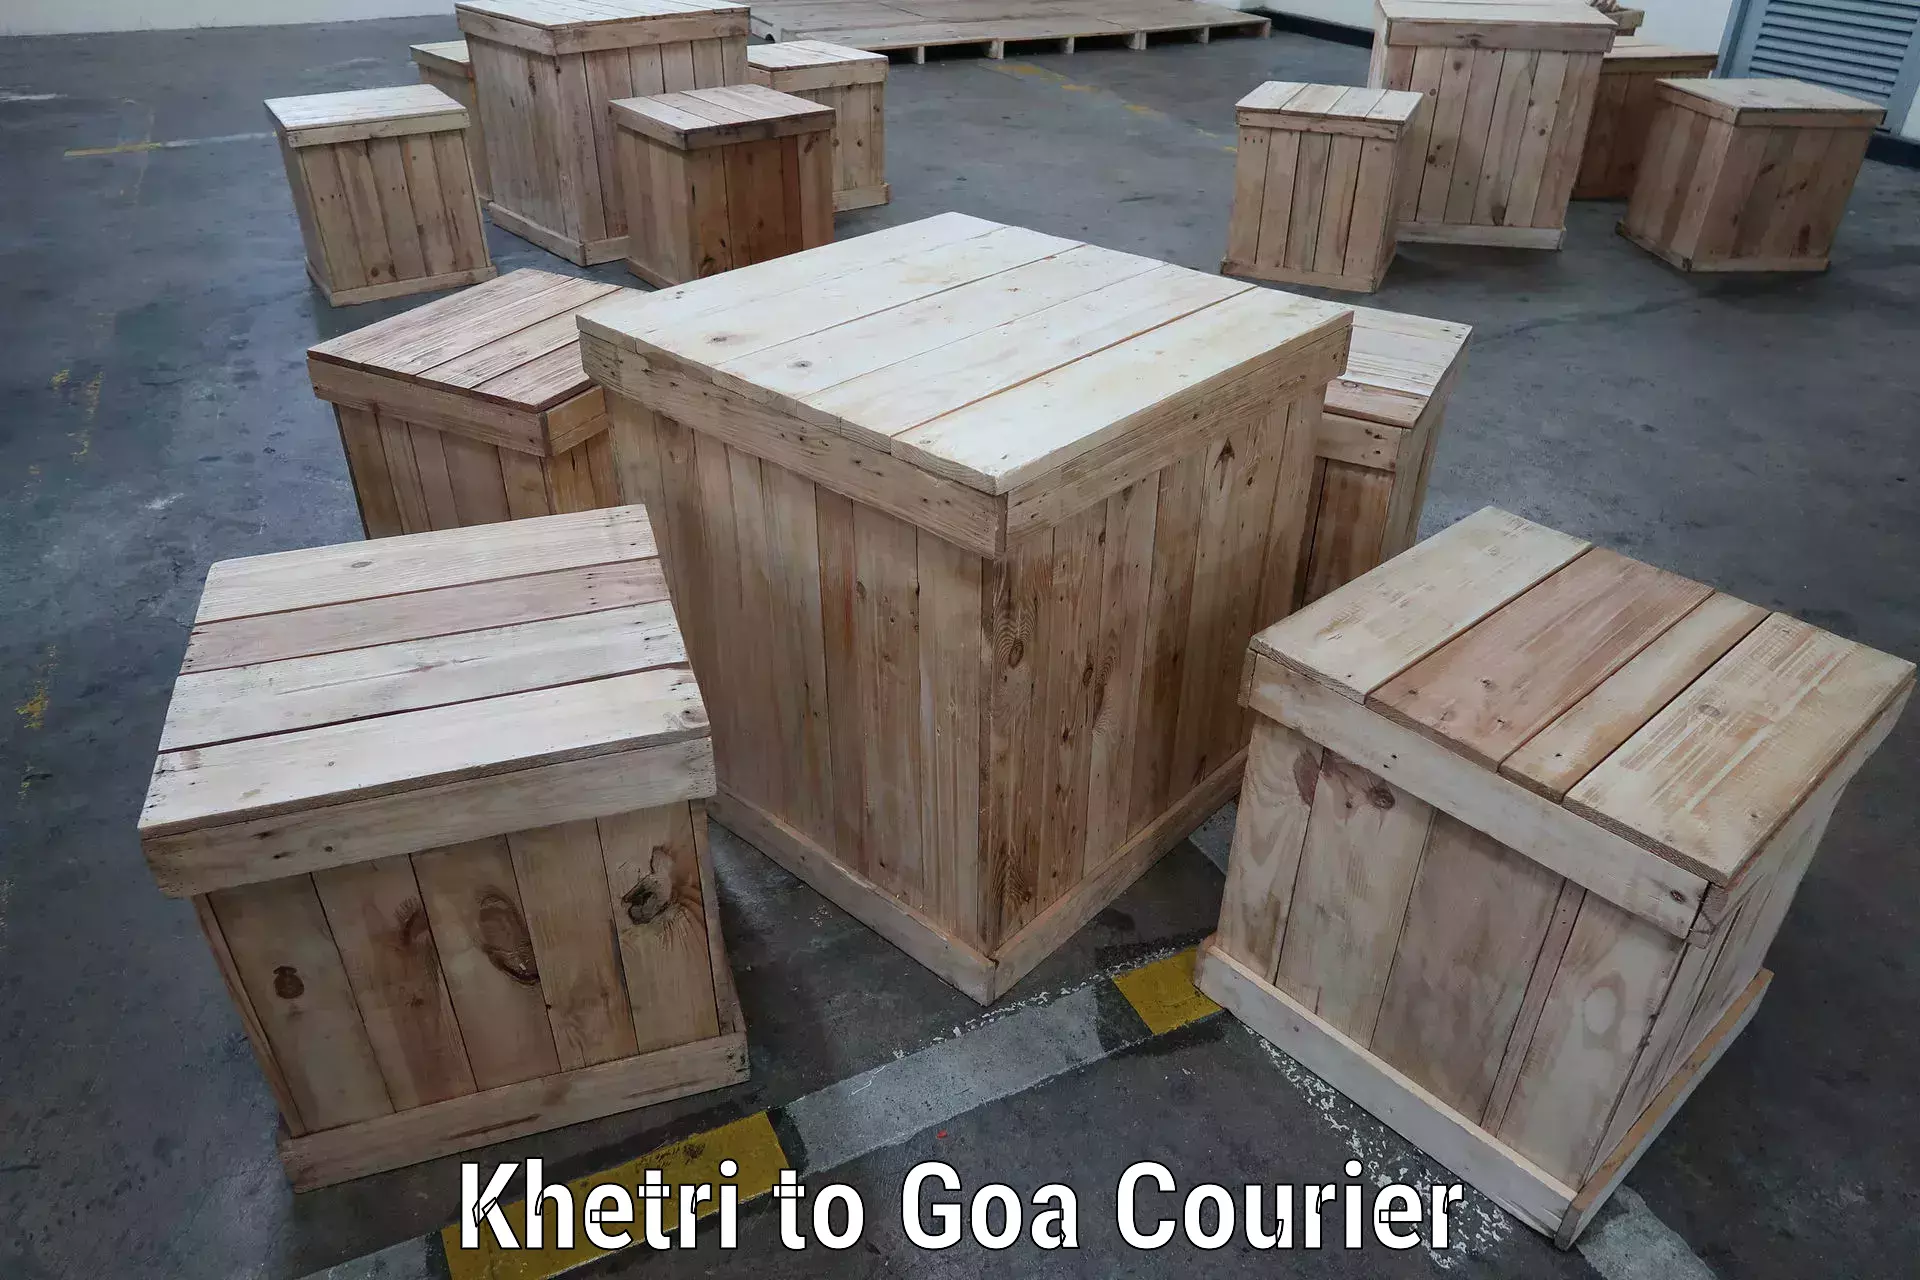 Logistics service provider Khetri to Goa